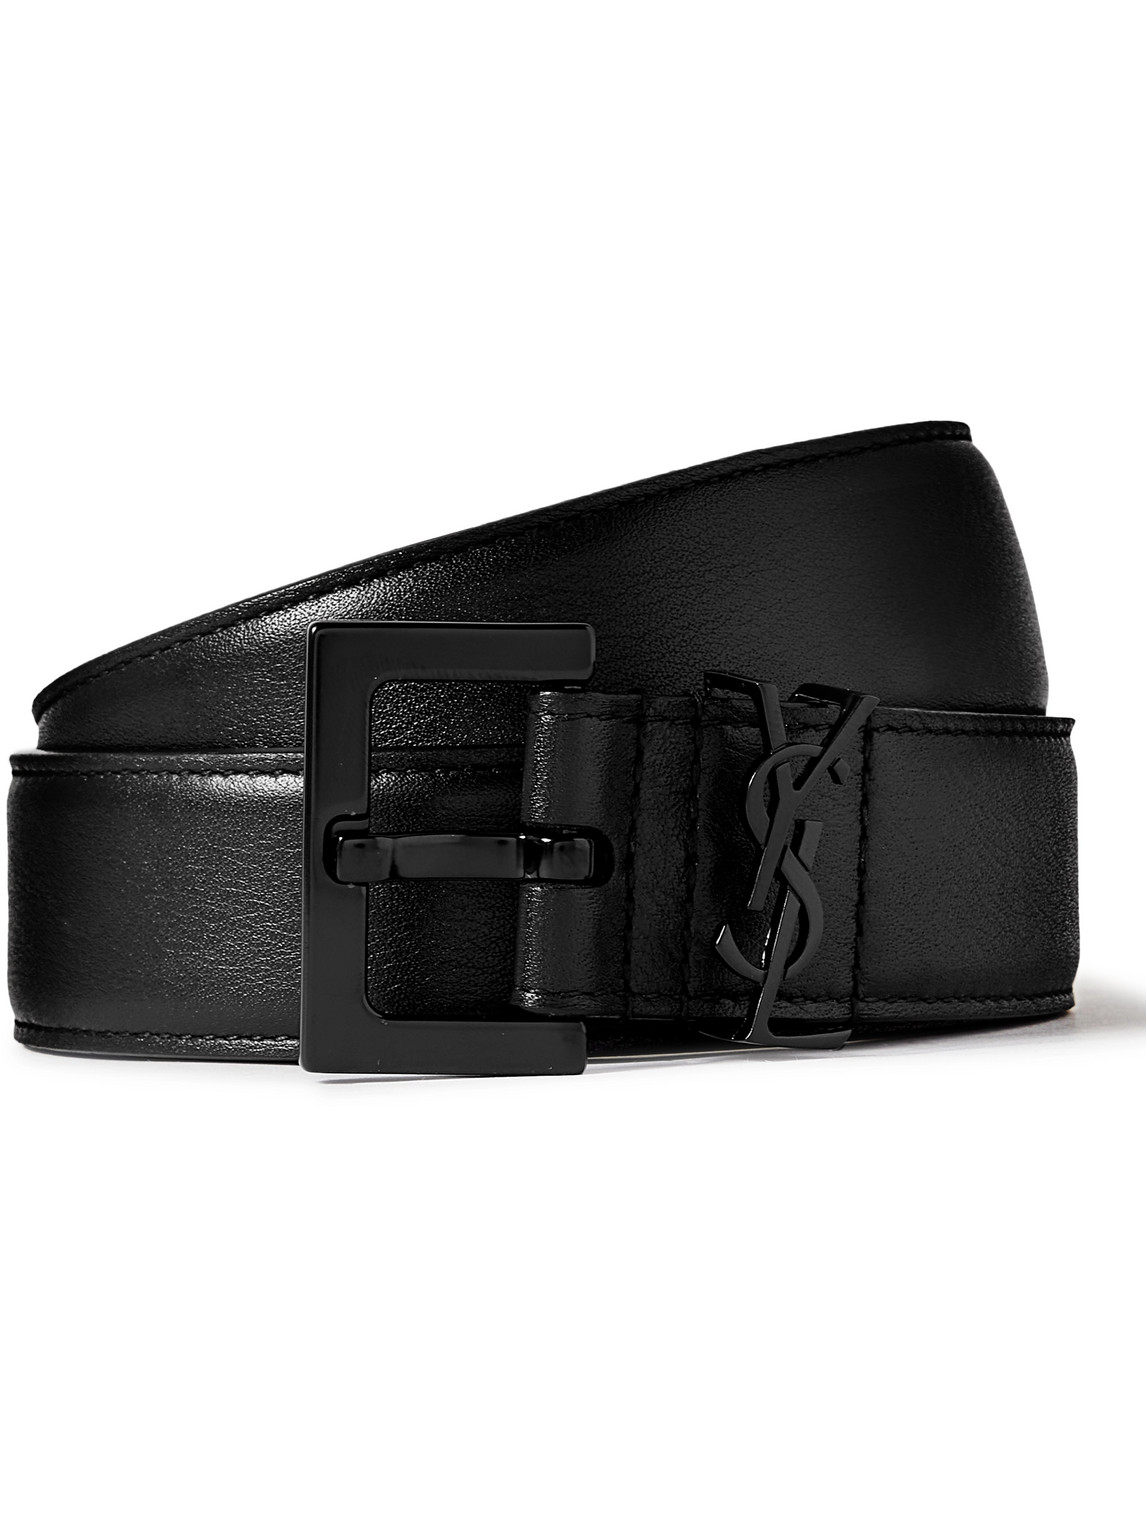 SAINT LAURENT - 3cm Full-Grain Leather Belt - Men - Black - EU 85 for Men